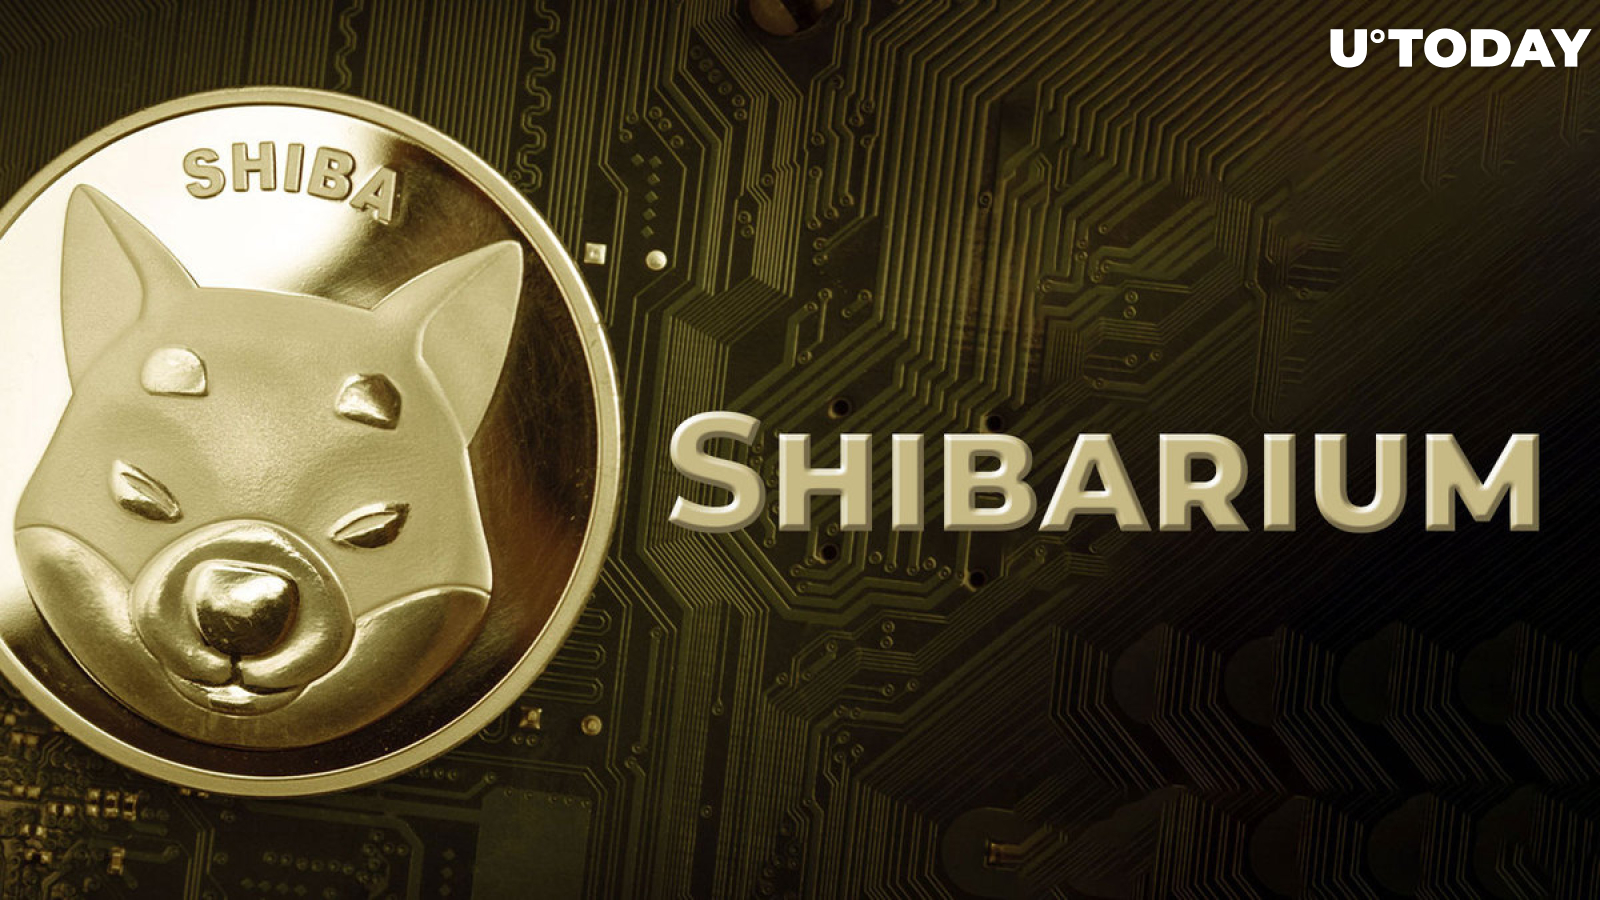 Vital Shibarium Update Announced by Top SHIB Team Member